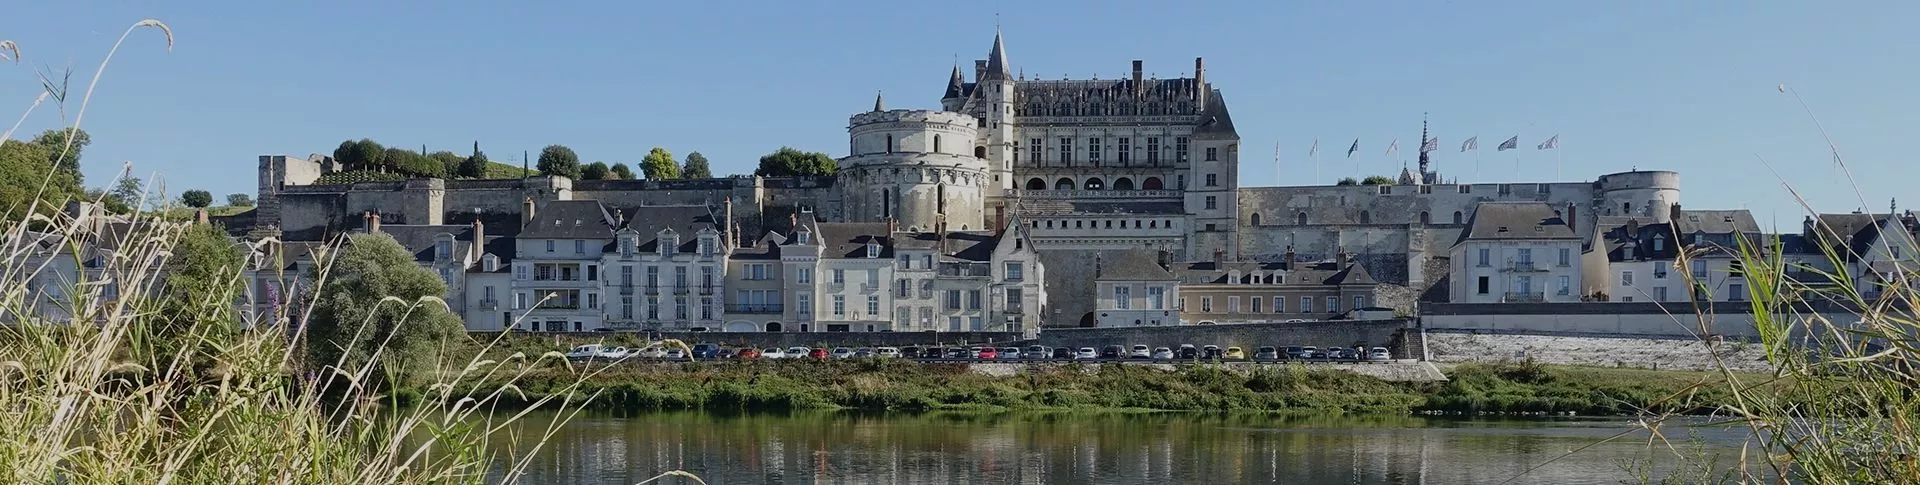 Château de la Ménaudière